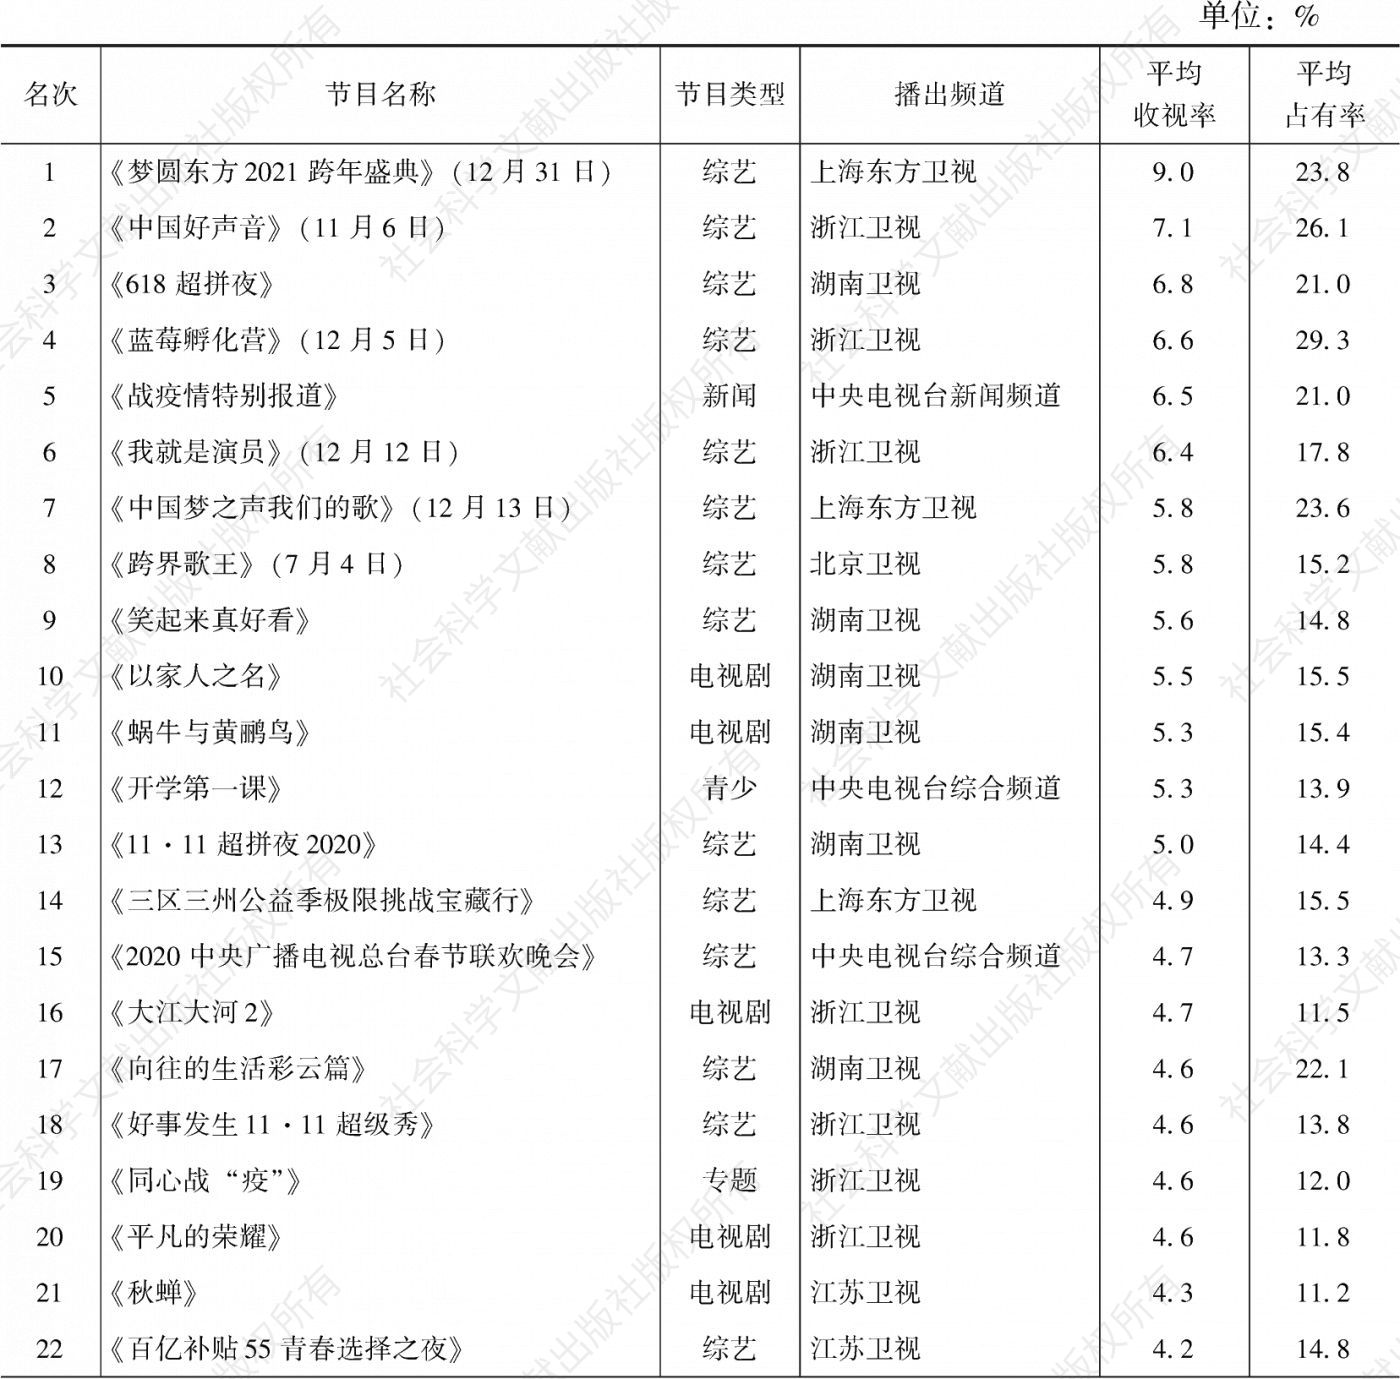 表3.30.7 2020年重庆市场所有节目收视率排名前30